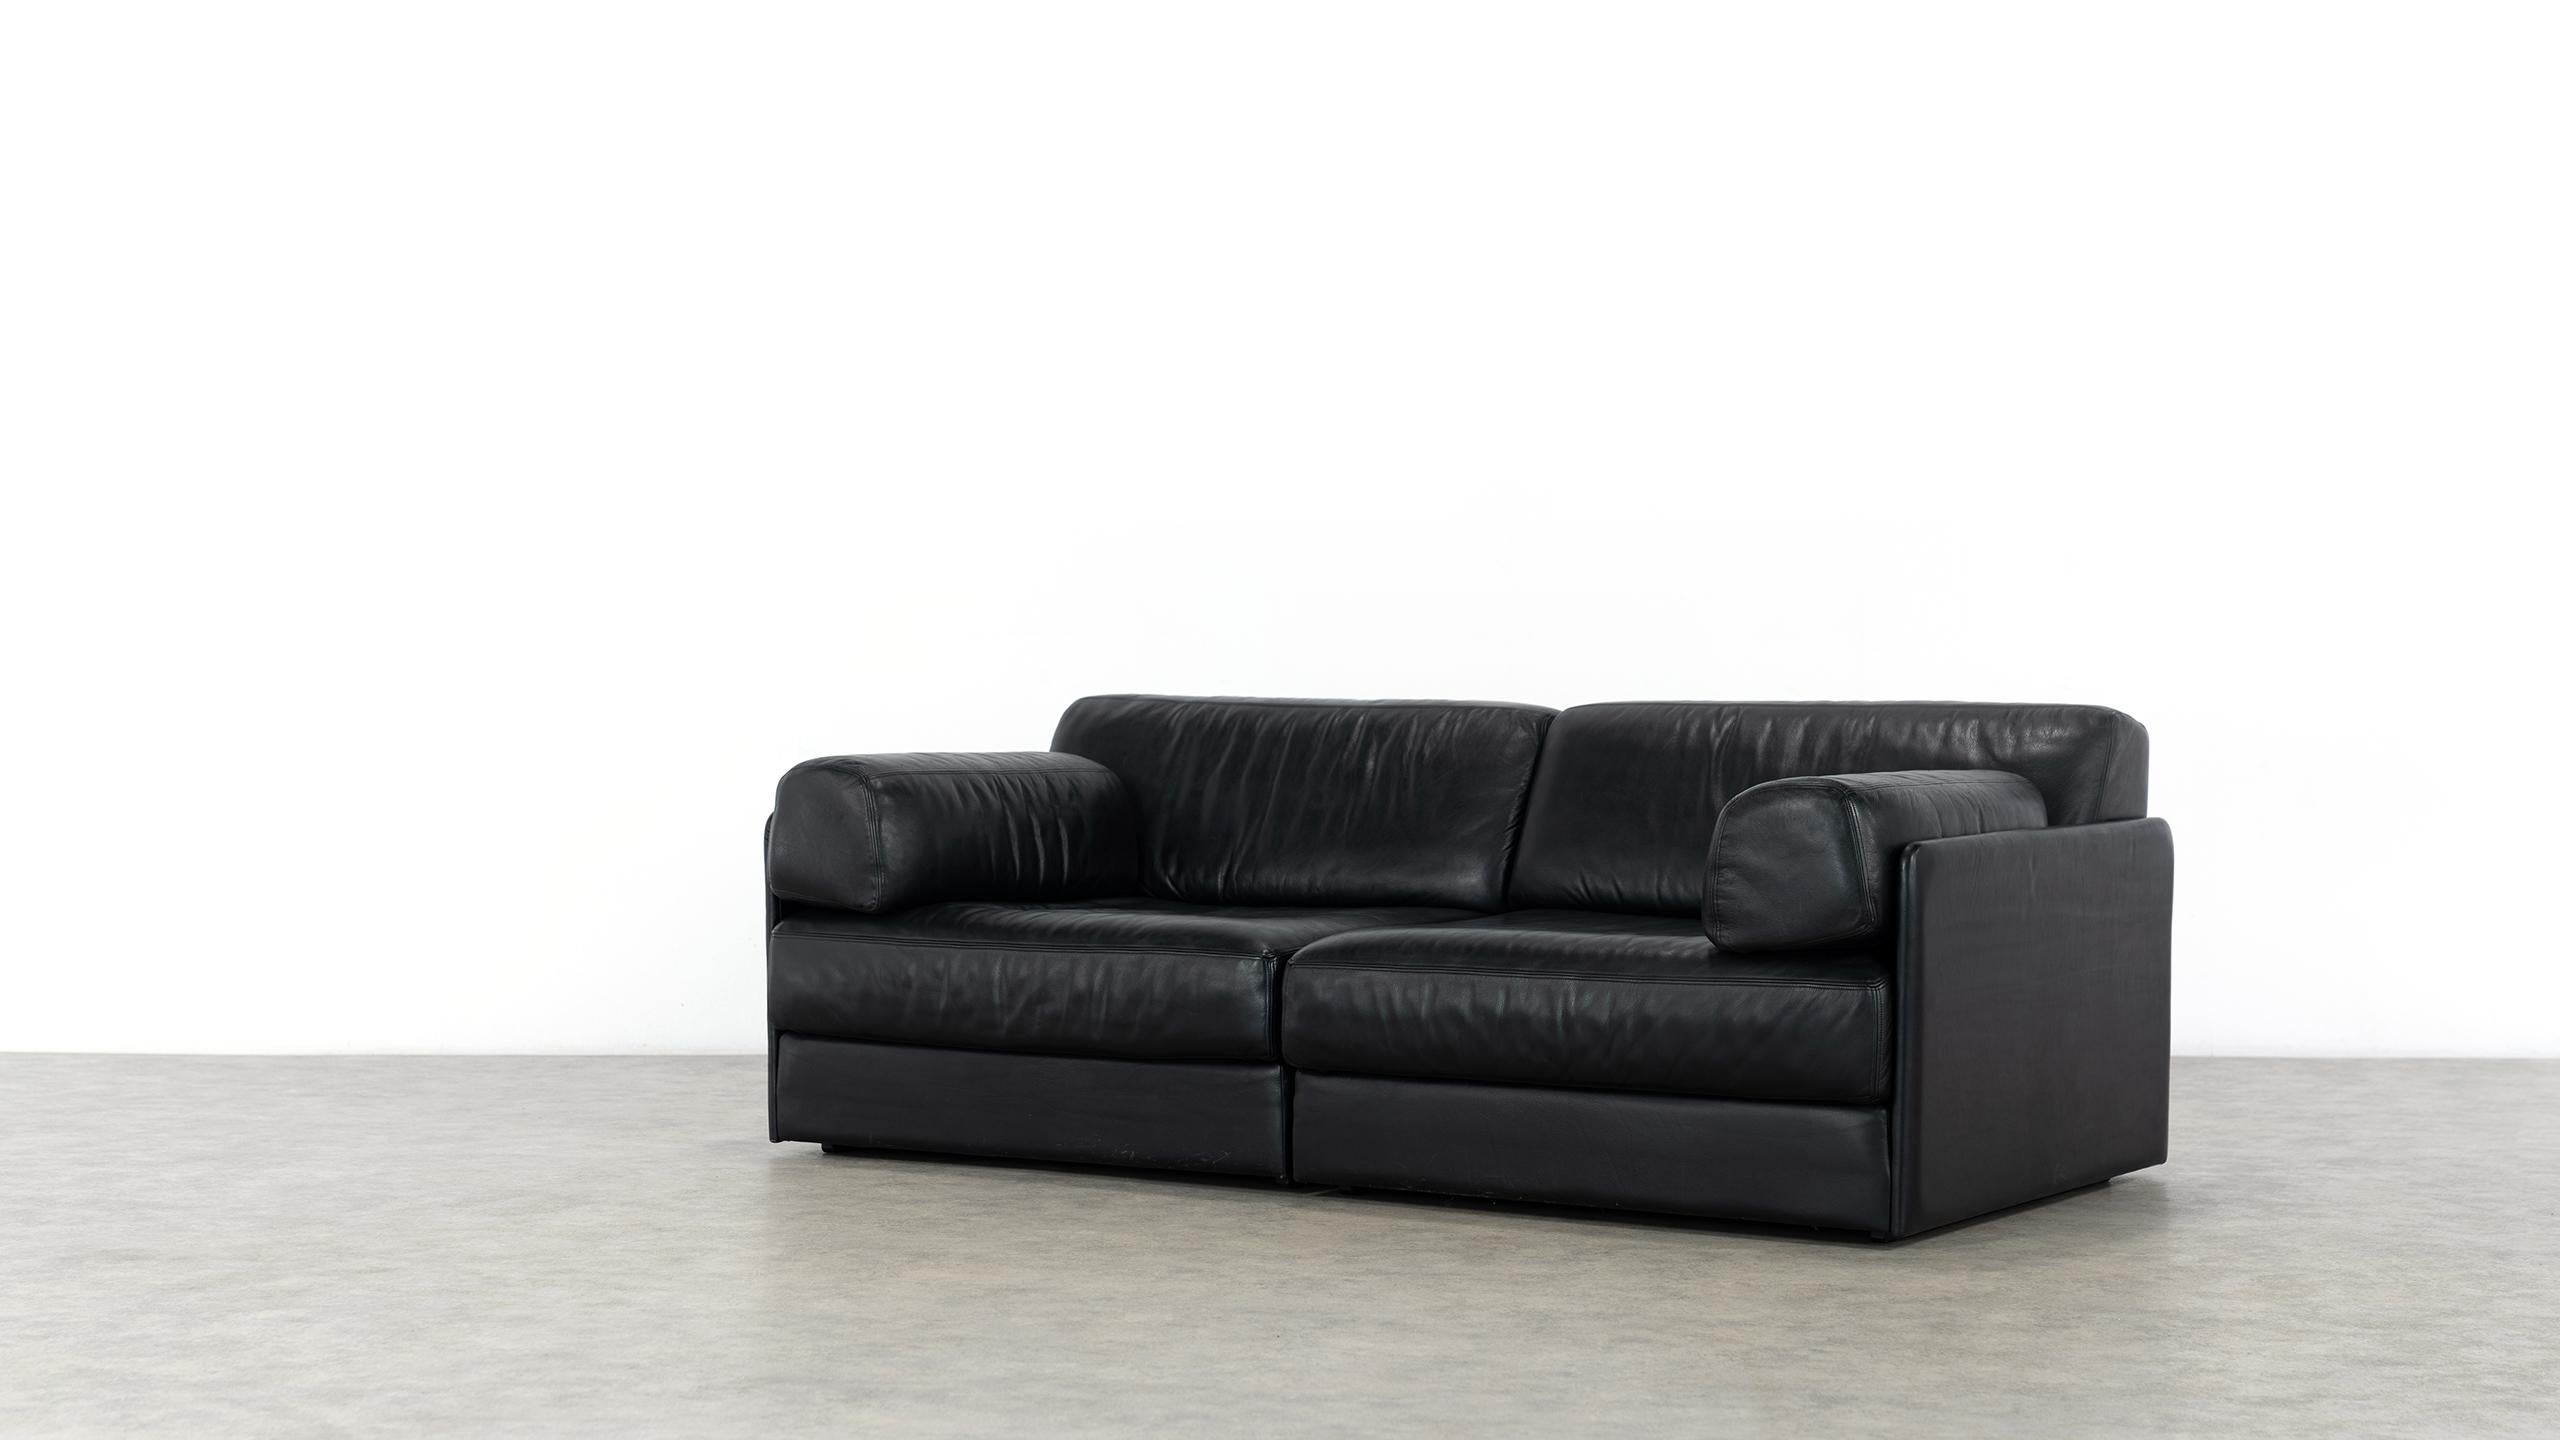 De Sede Ds76, Sofa & Daybed in Black Leather, 1972 by De Sede Design Team 7